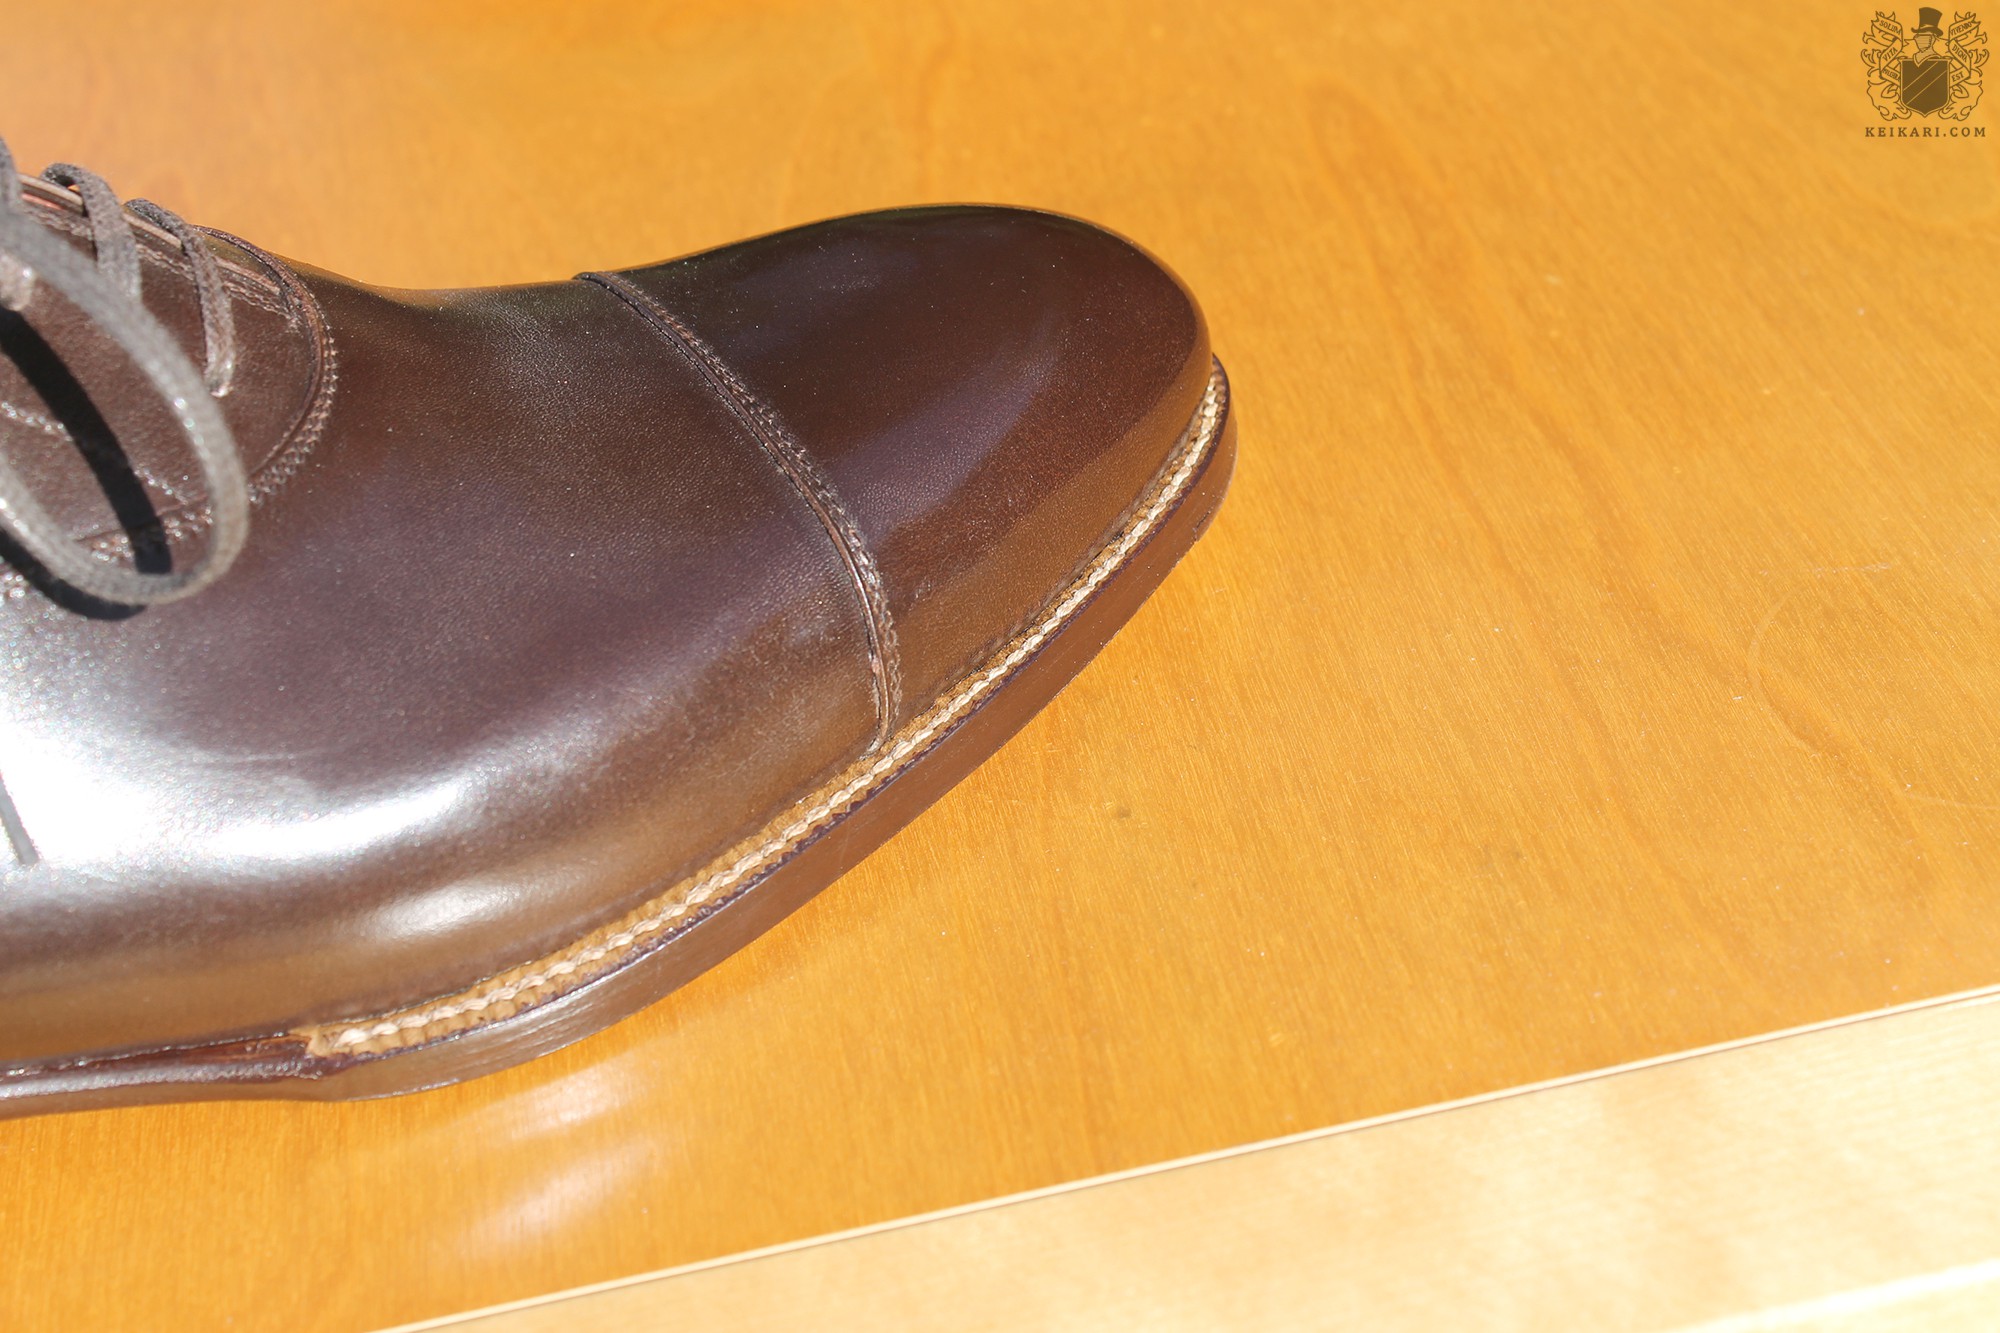 Anatomy_of_Saint_Crispin's_shoes_at_Keikari_dot_com11